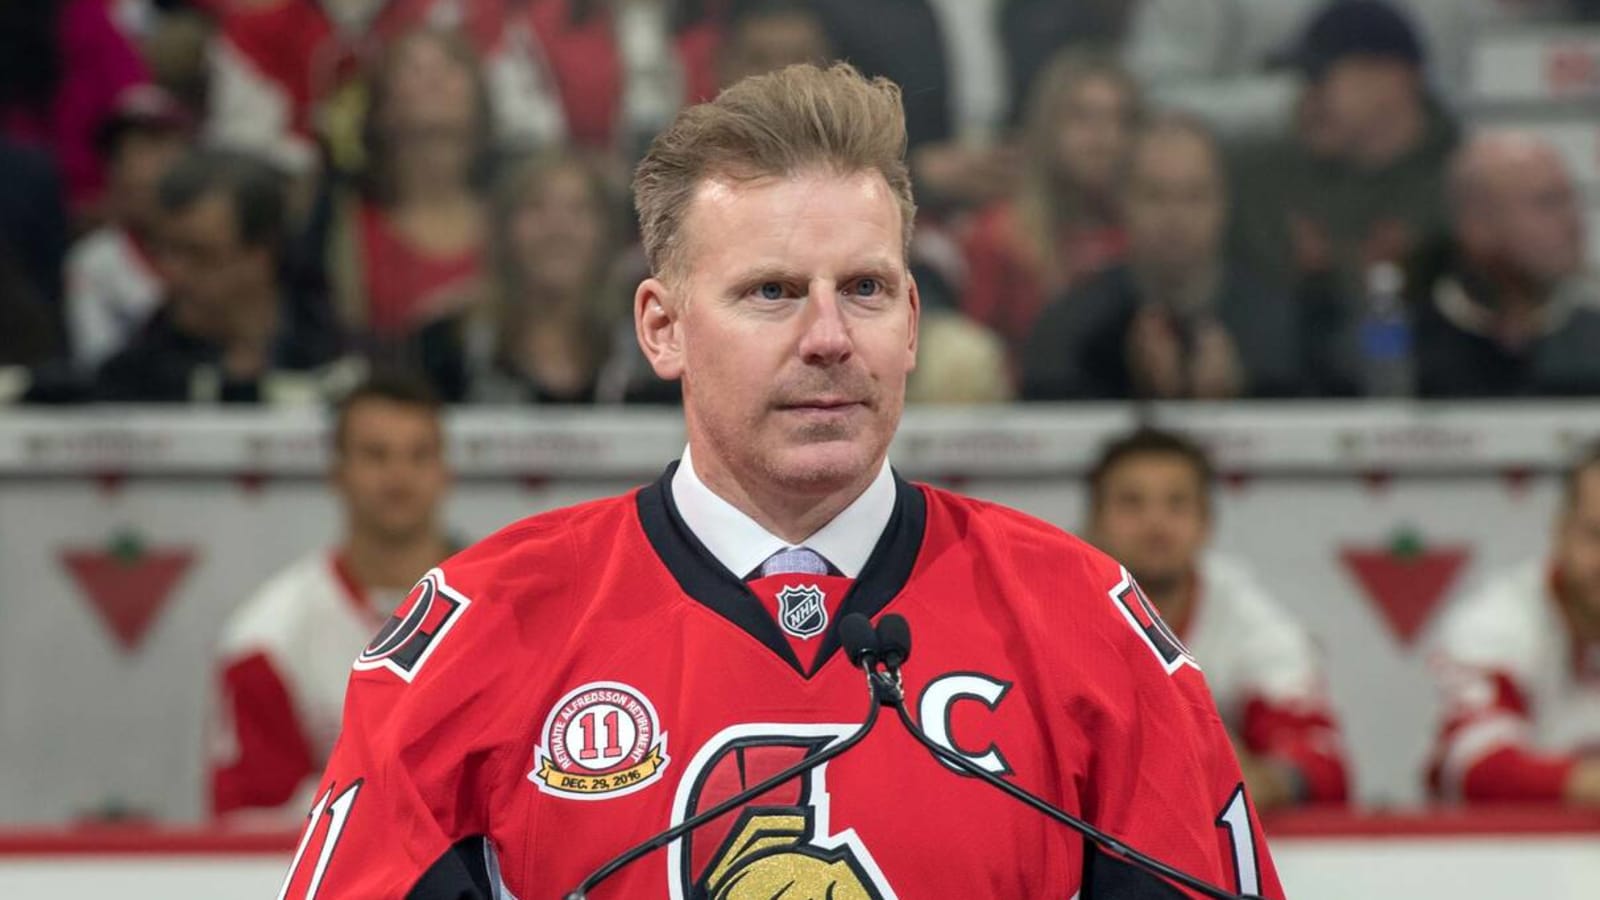 Ottawa Senators, 2011-Present (11, Daniel Alfredsson)